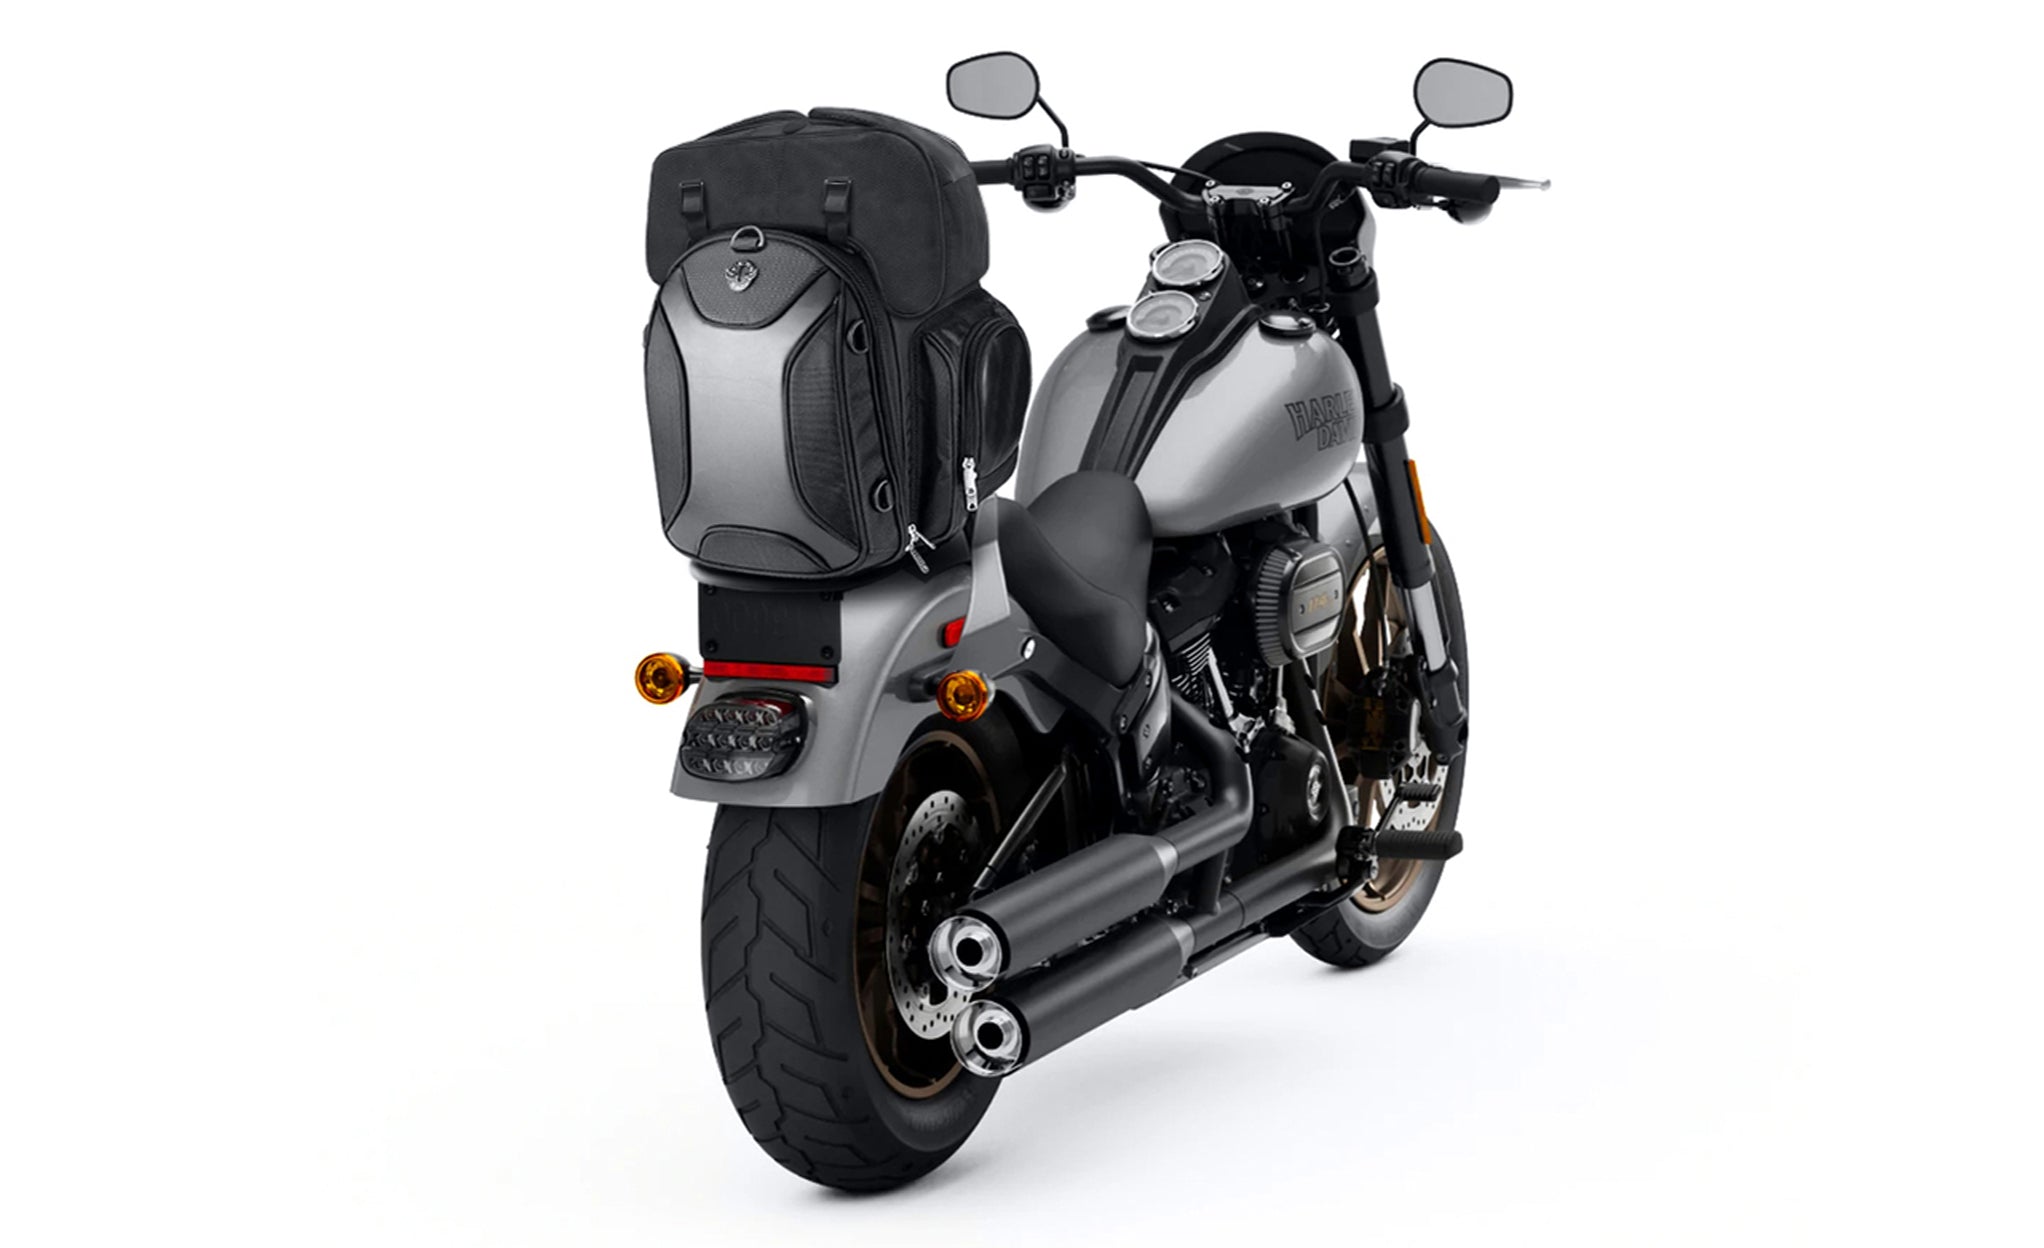 Viking Dagr Extra Large Suzuki Motorcycle Tail Bag Bag on Bike View @expand